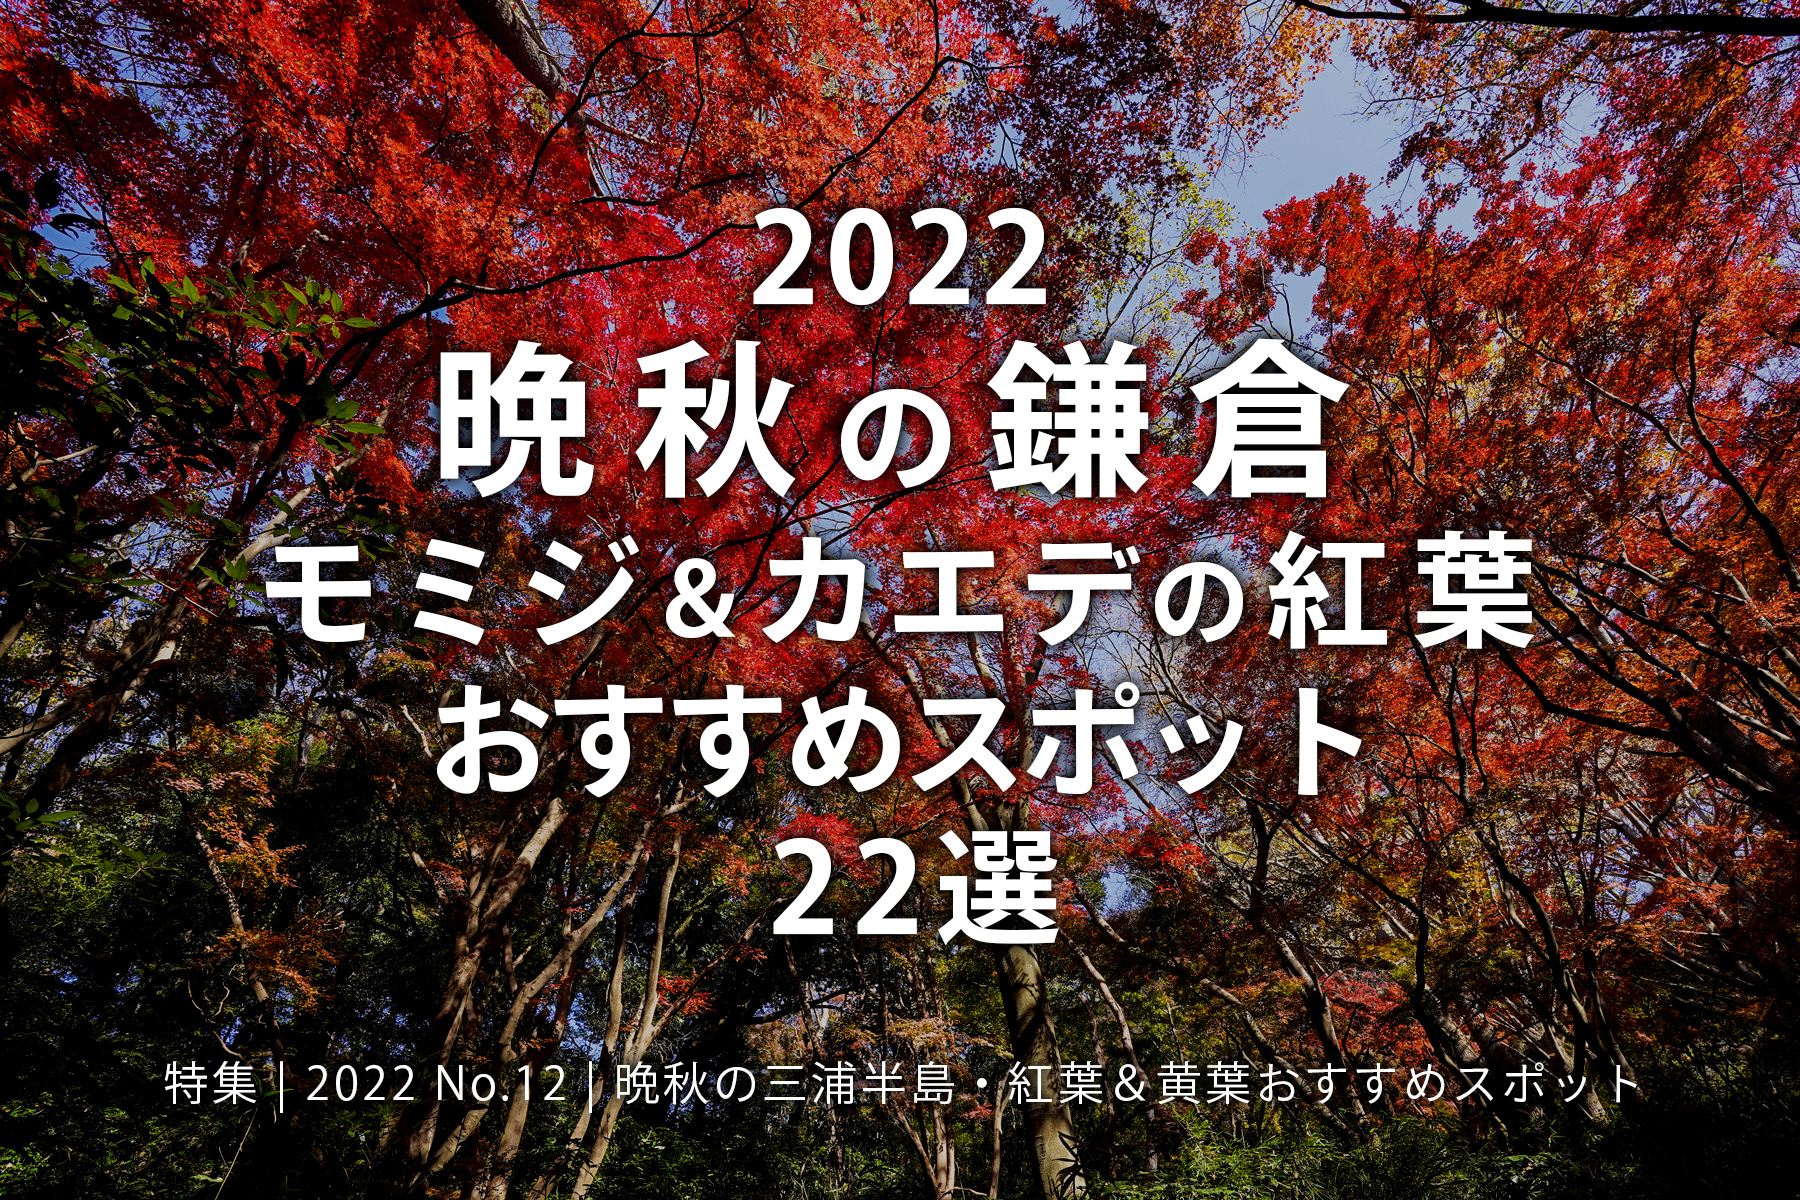 【2022 No.12】特集 | 晩秋の鎌倉・モミジ＆カエデの紅葉おすすめスポット20選